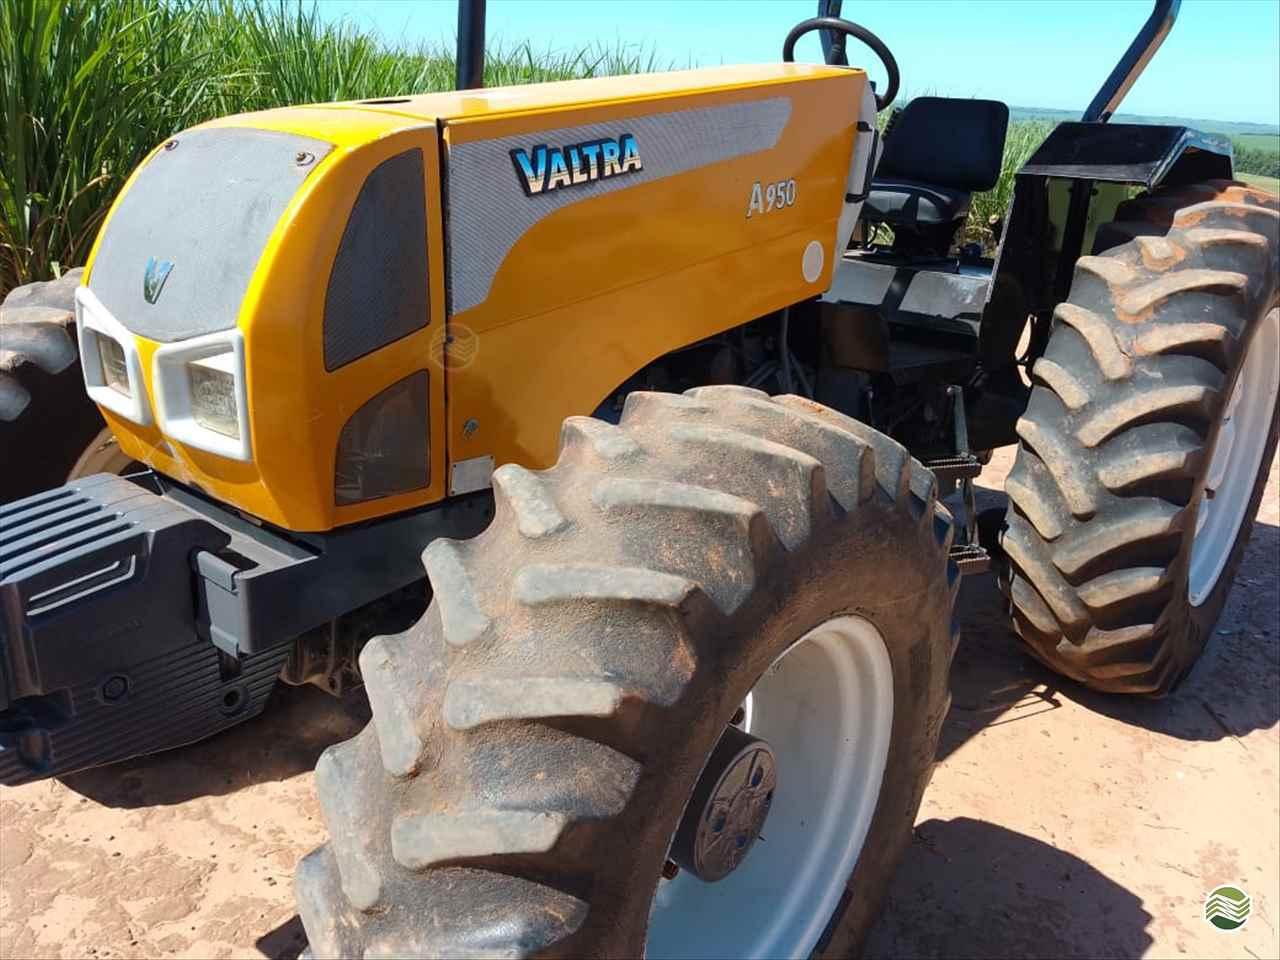 VALTRA A950